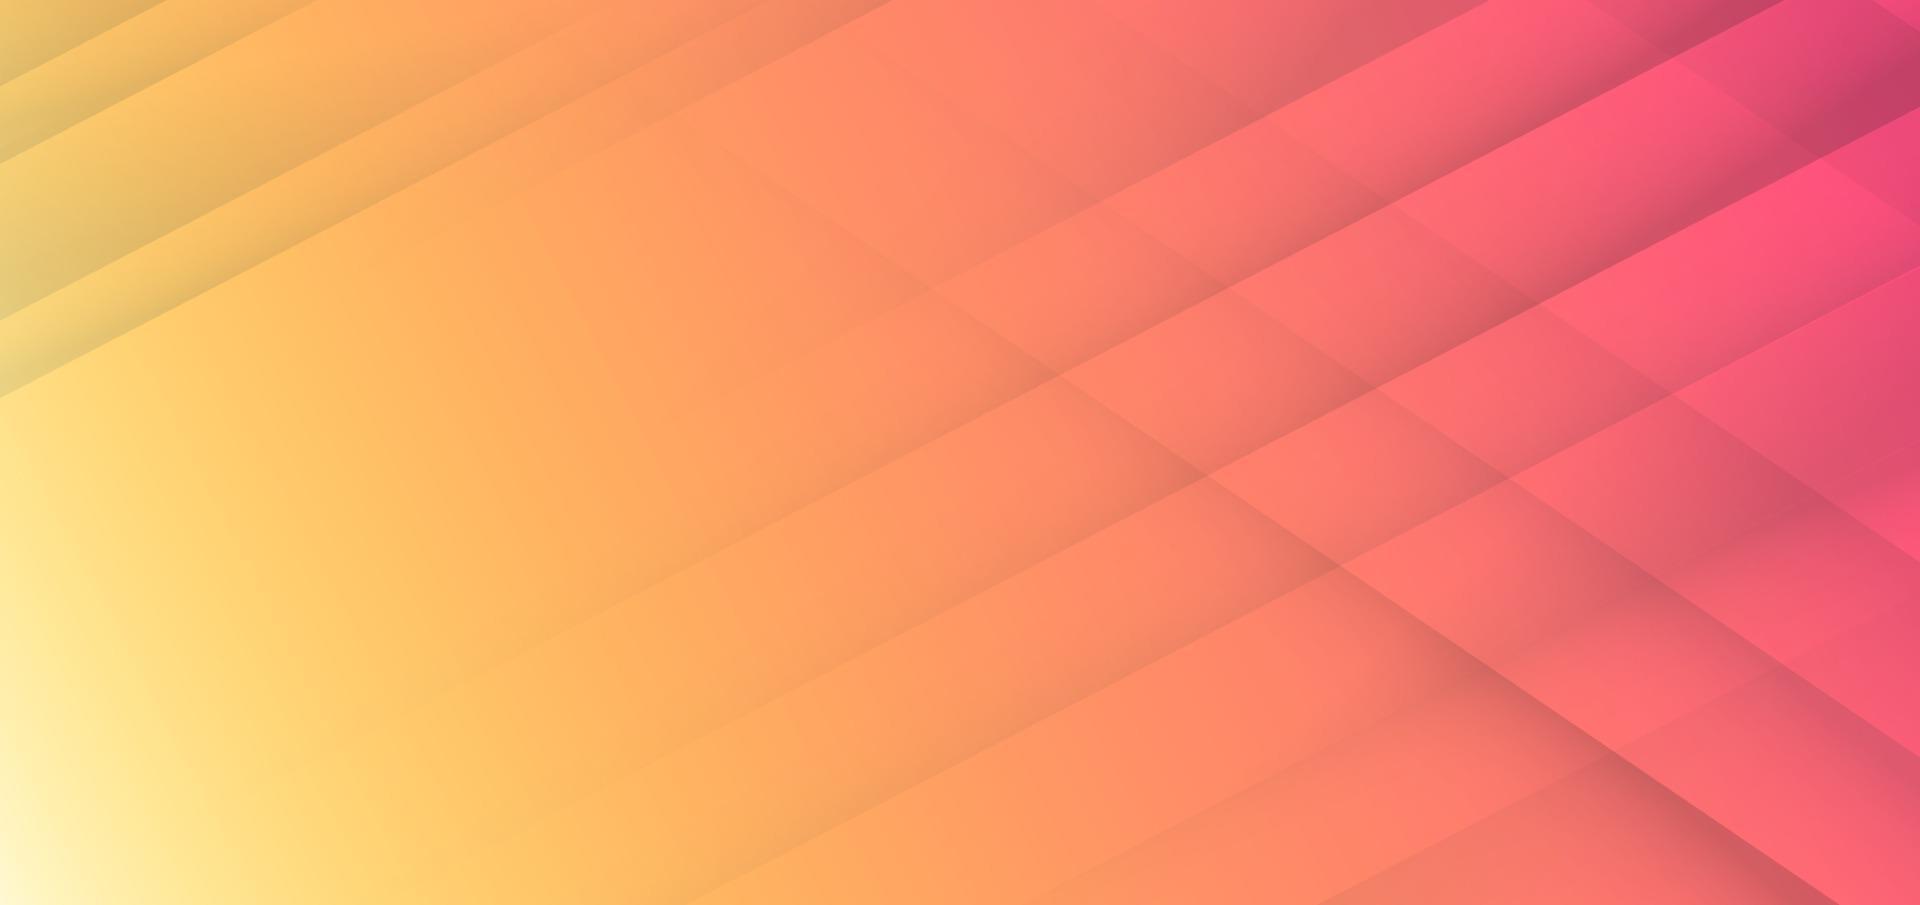 abstracte geometrische diagonale oranje achtergrond met kleurovergang vector